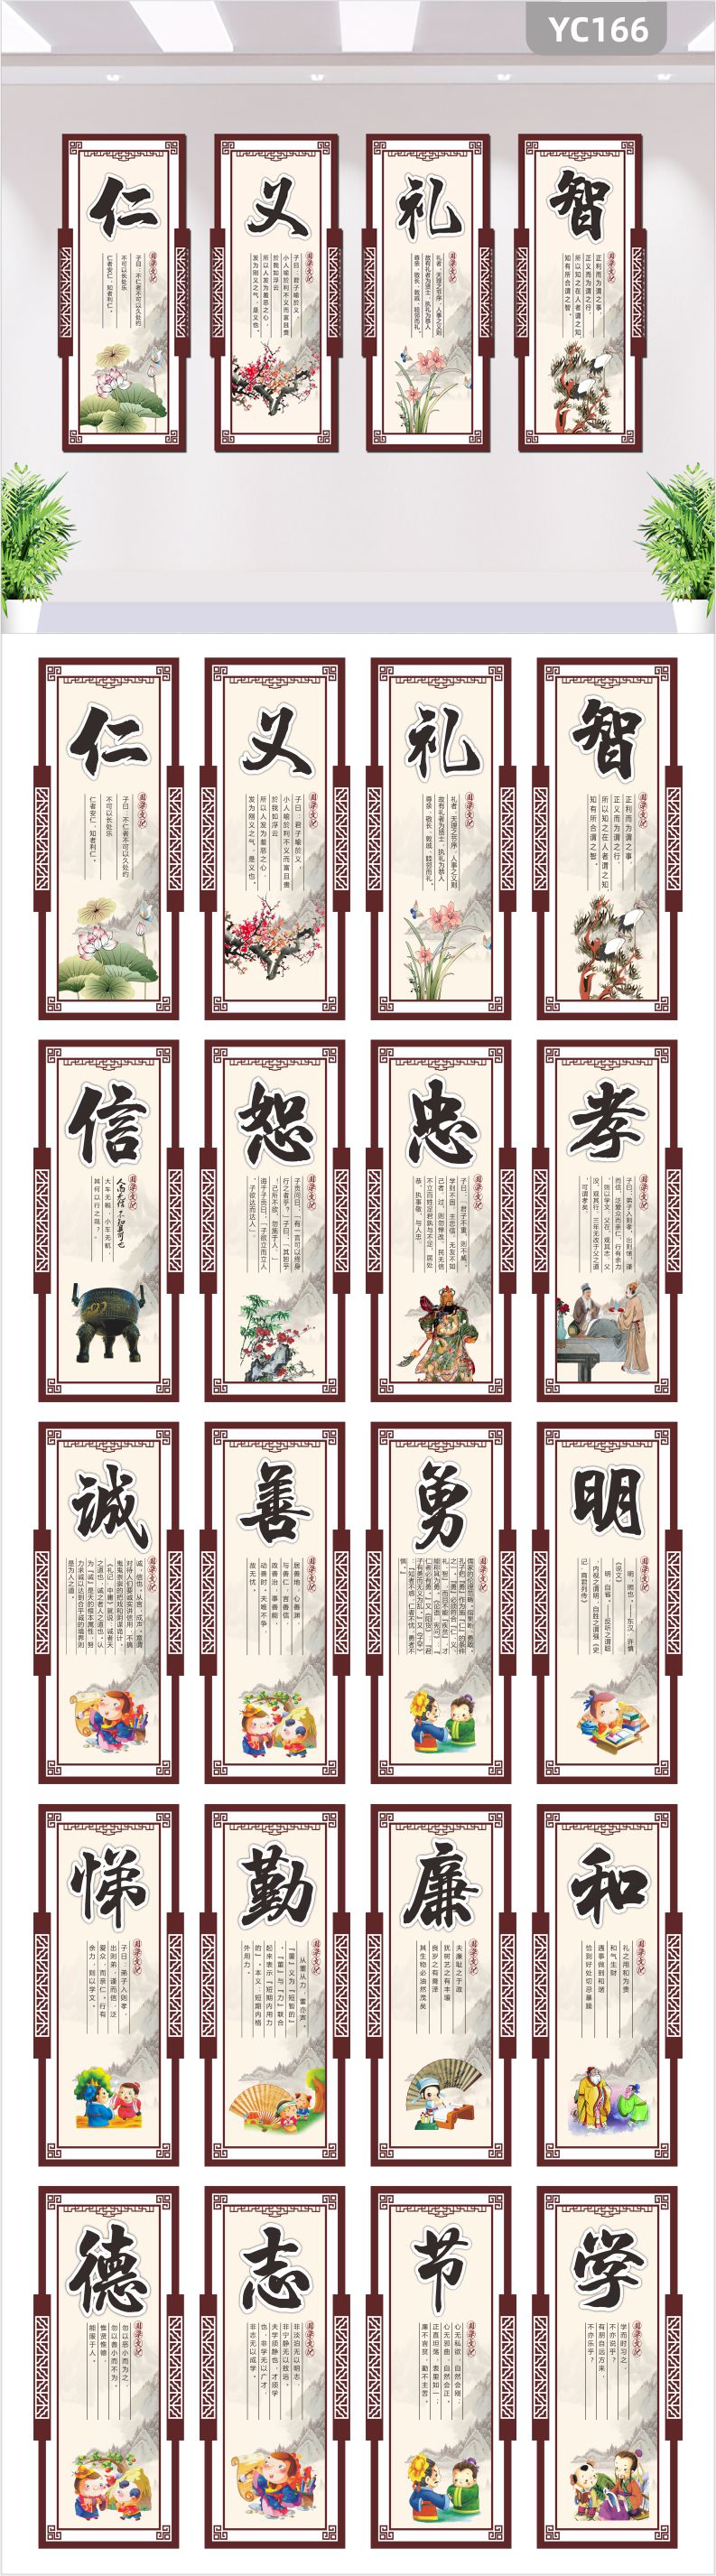 儒家传统文化宣传墙教室仁义礼智信五常思想简介几何组合挂画装饰墙